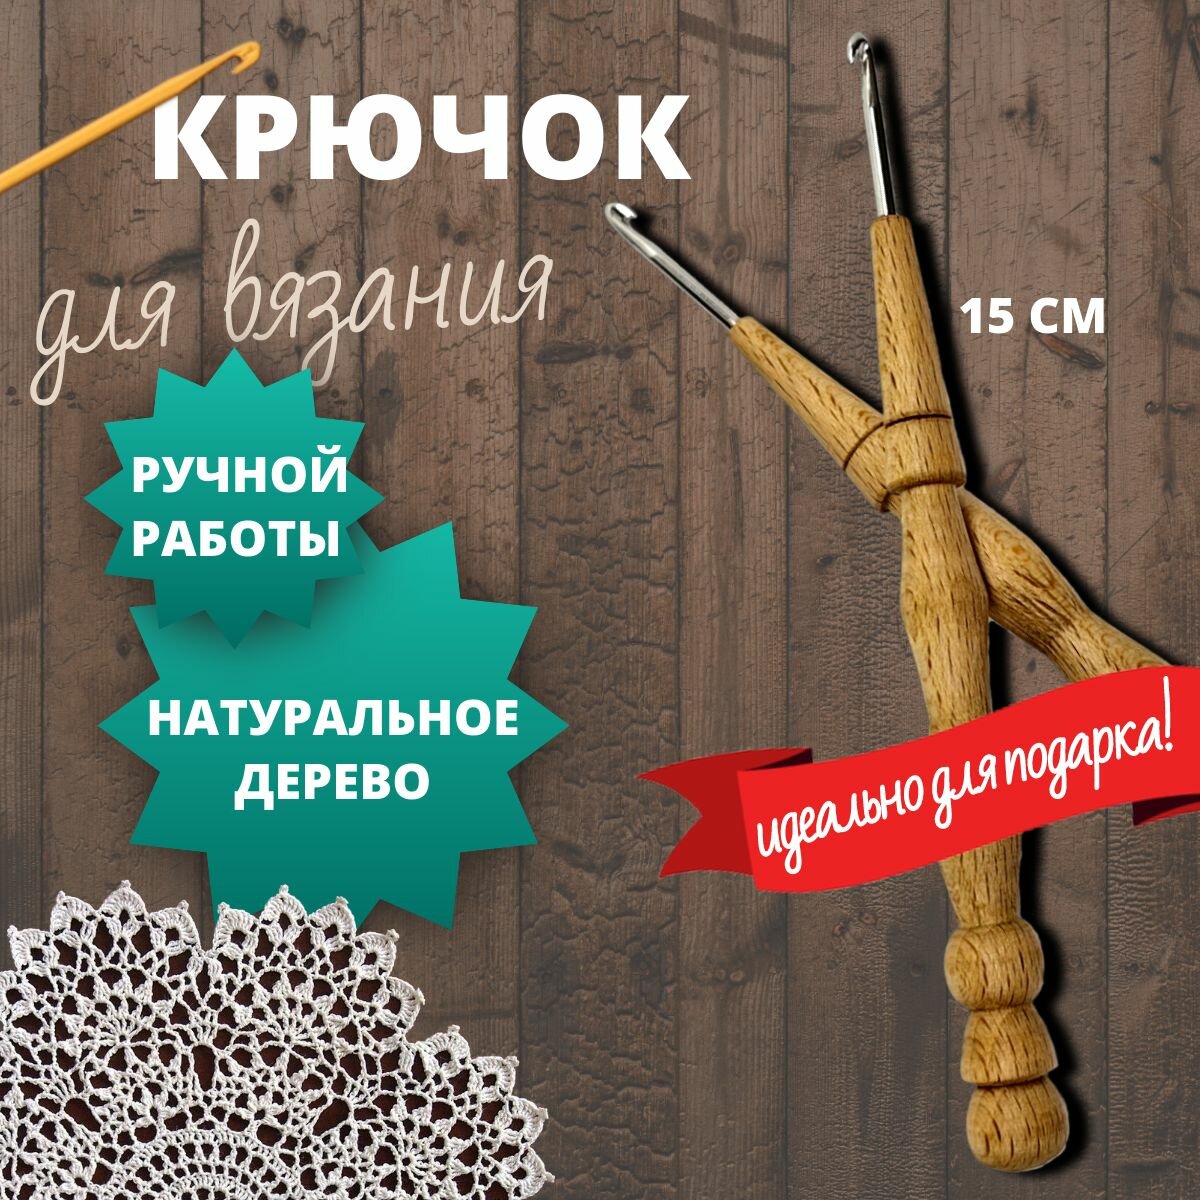 Крючок для вязания 3 мм с деревянной ручкой, ручной работы из бука, набор для вязания